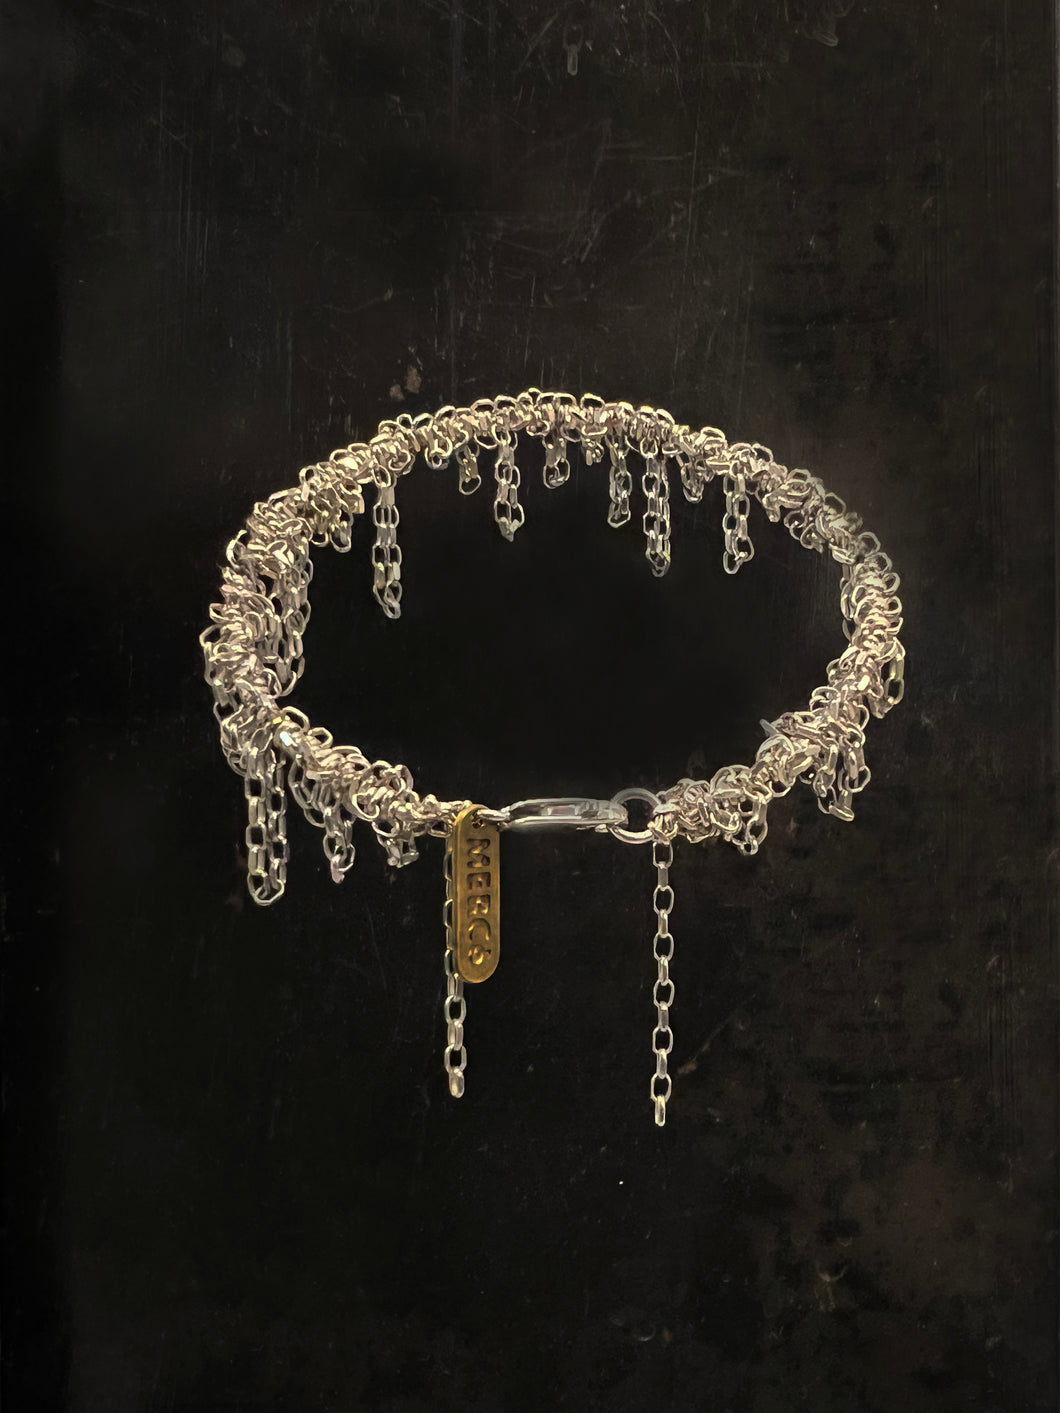 Lagrimas Bracelet - Silver Chain Bracelet